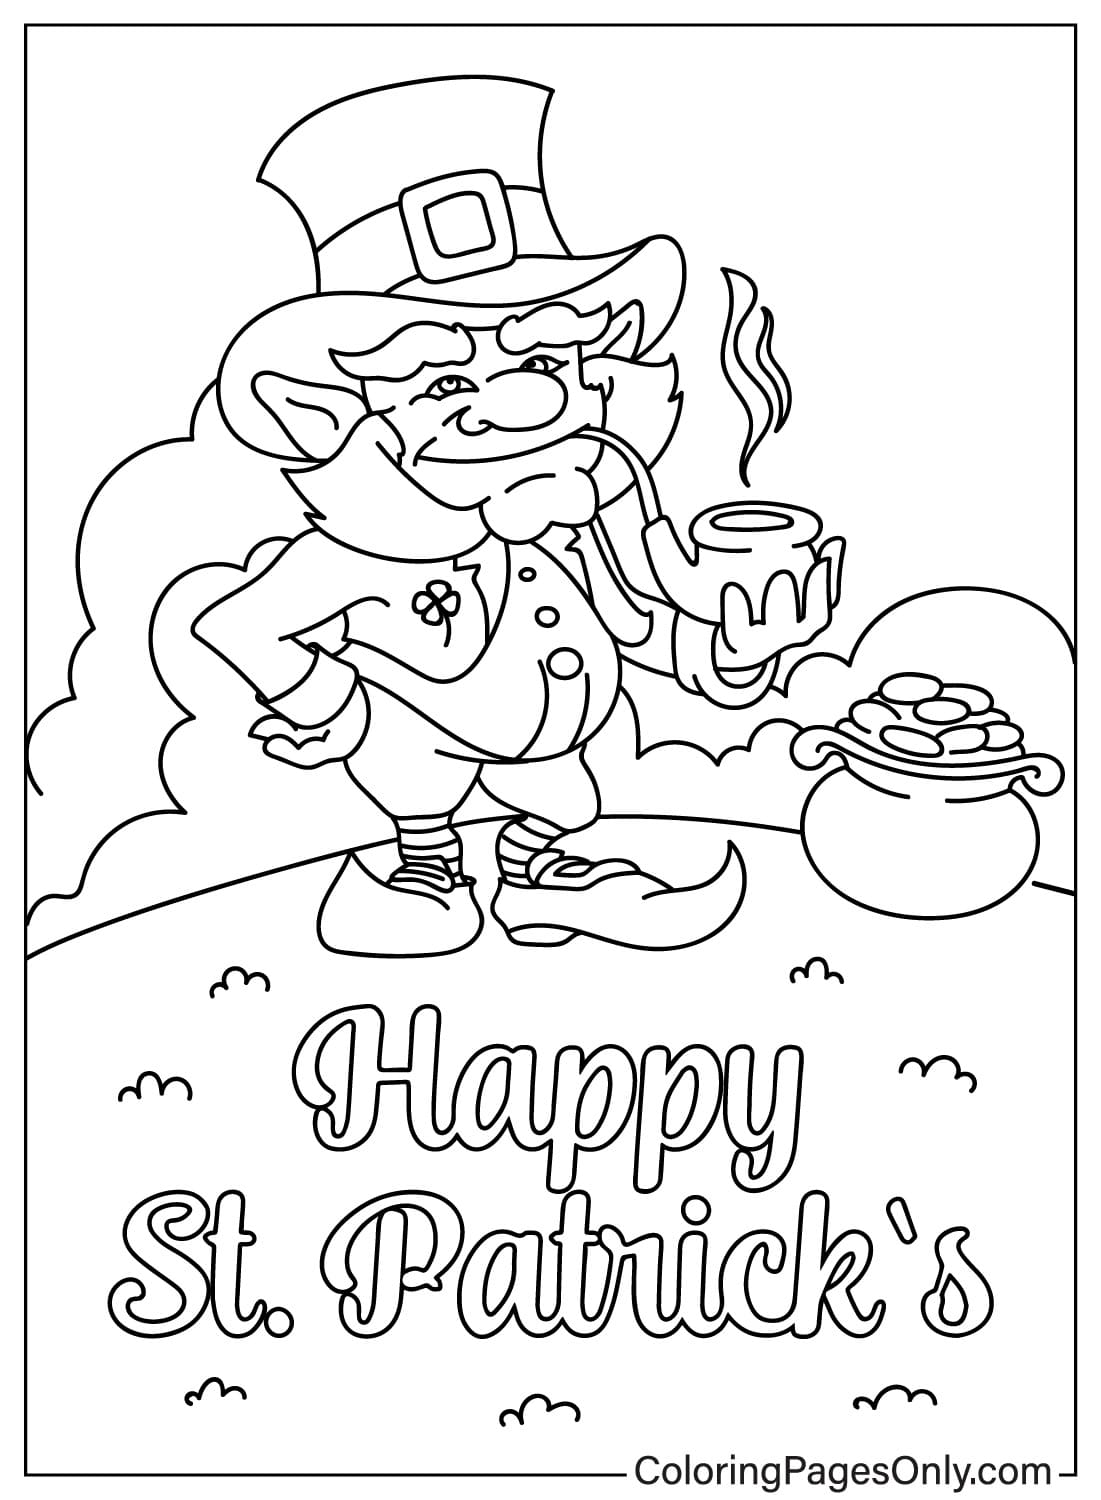 Coloriage de Leprechaun et Happy St. Patricks Day de Happy St. Patrick's Day